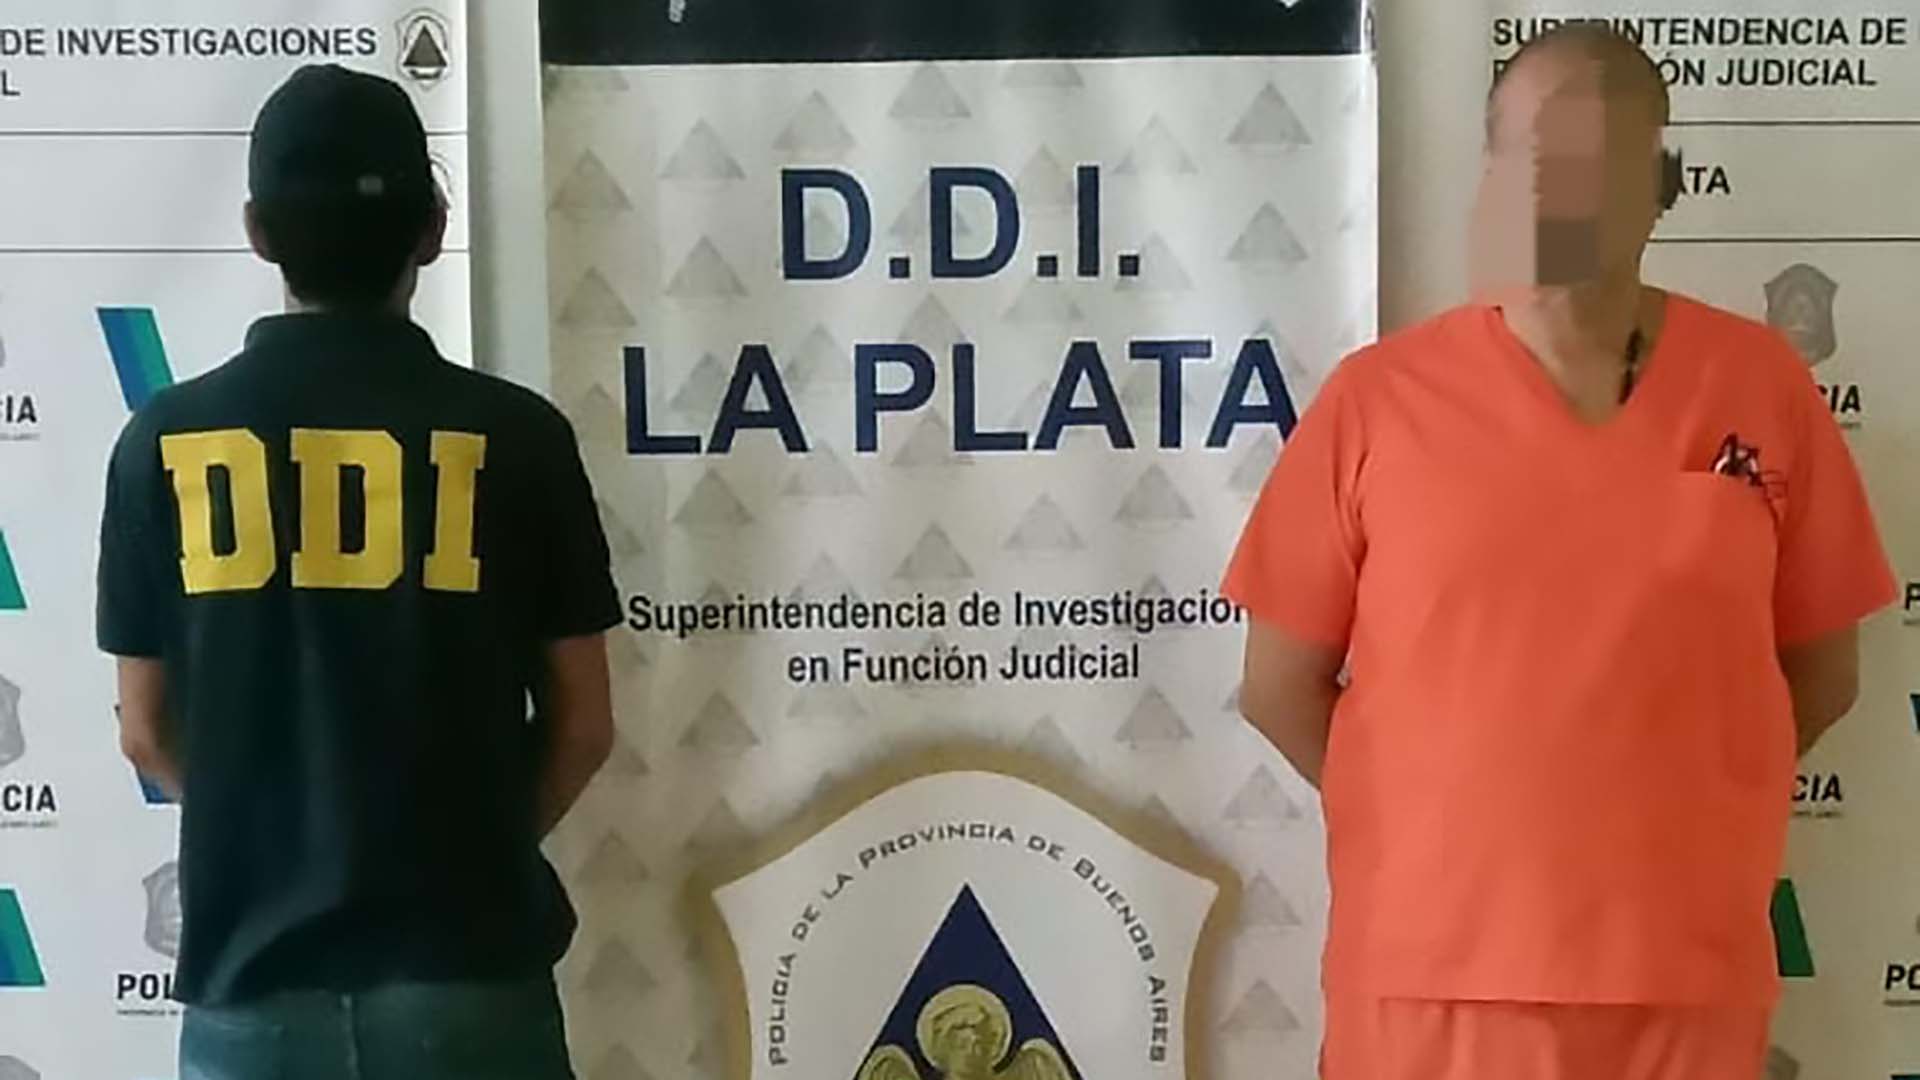 El médico se presentó en la sede de la DDI de La Plata vestido con el ambo de color naranja